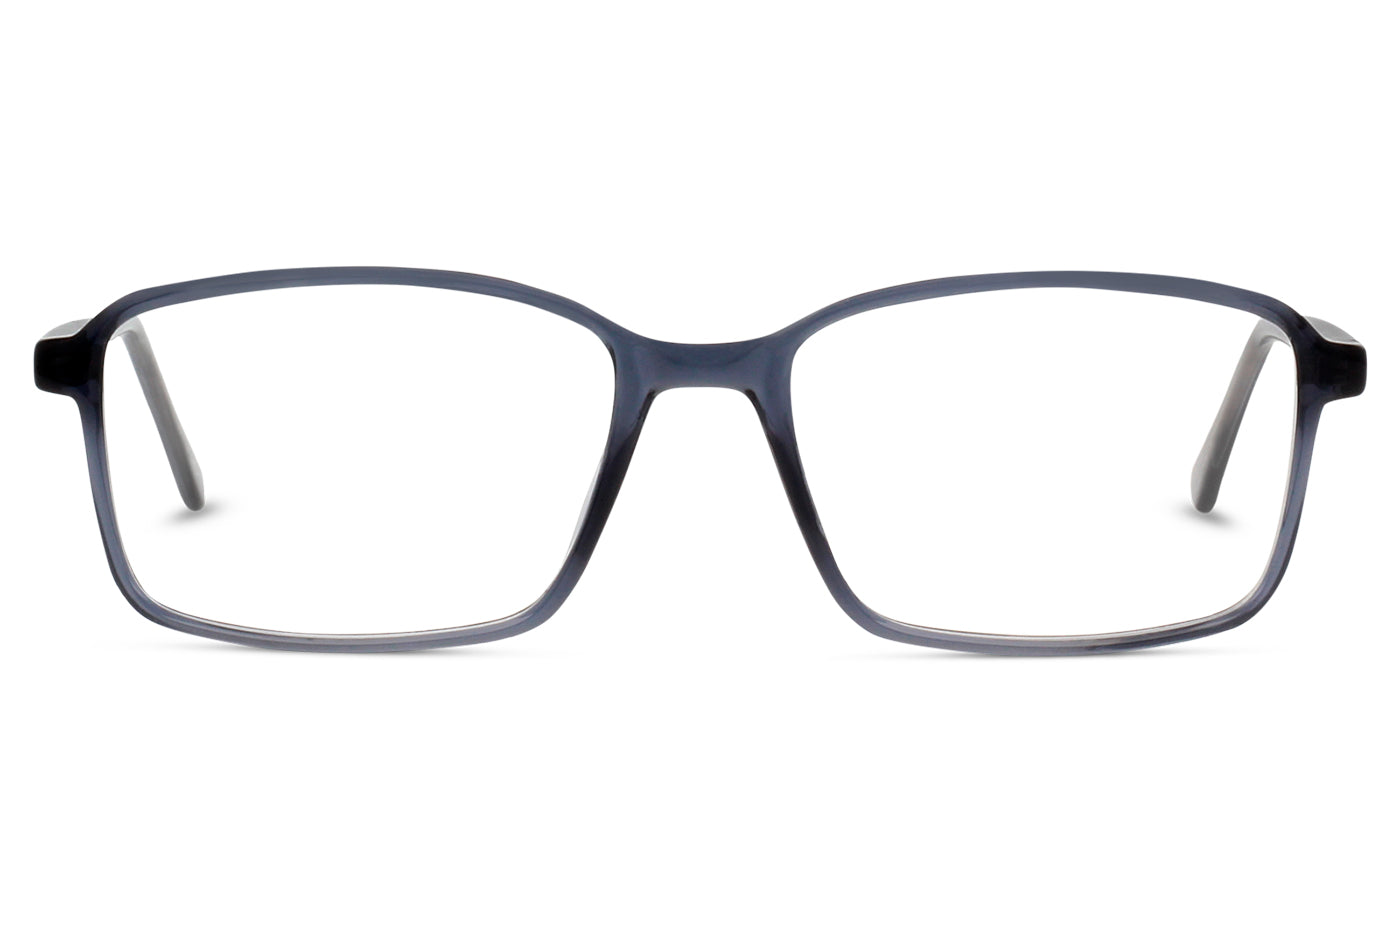 Vista-1 - Gafas oftalmicas Seen BP_CM12 Hombre Color Gris / Incluye lentes filtro luz azul violeta